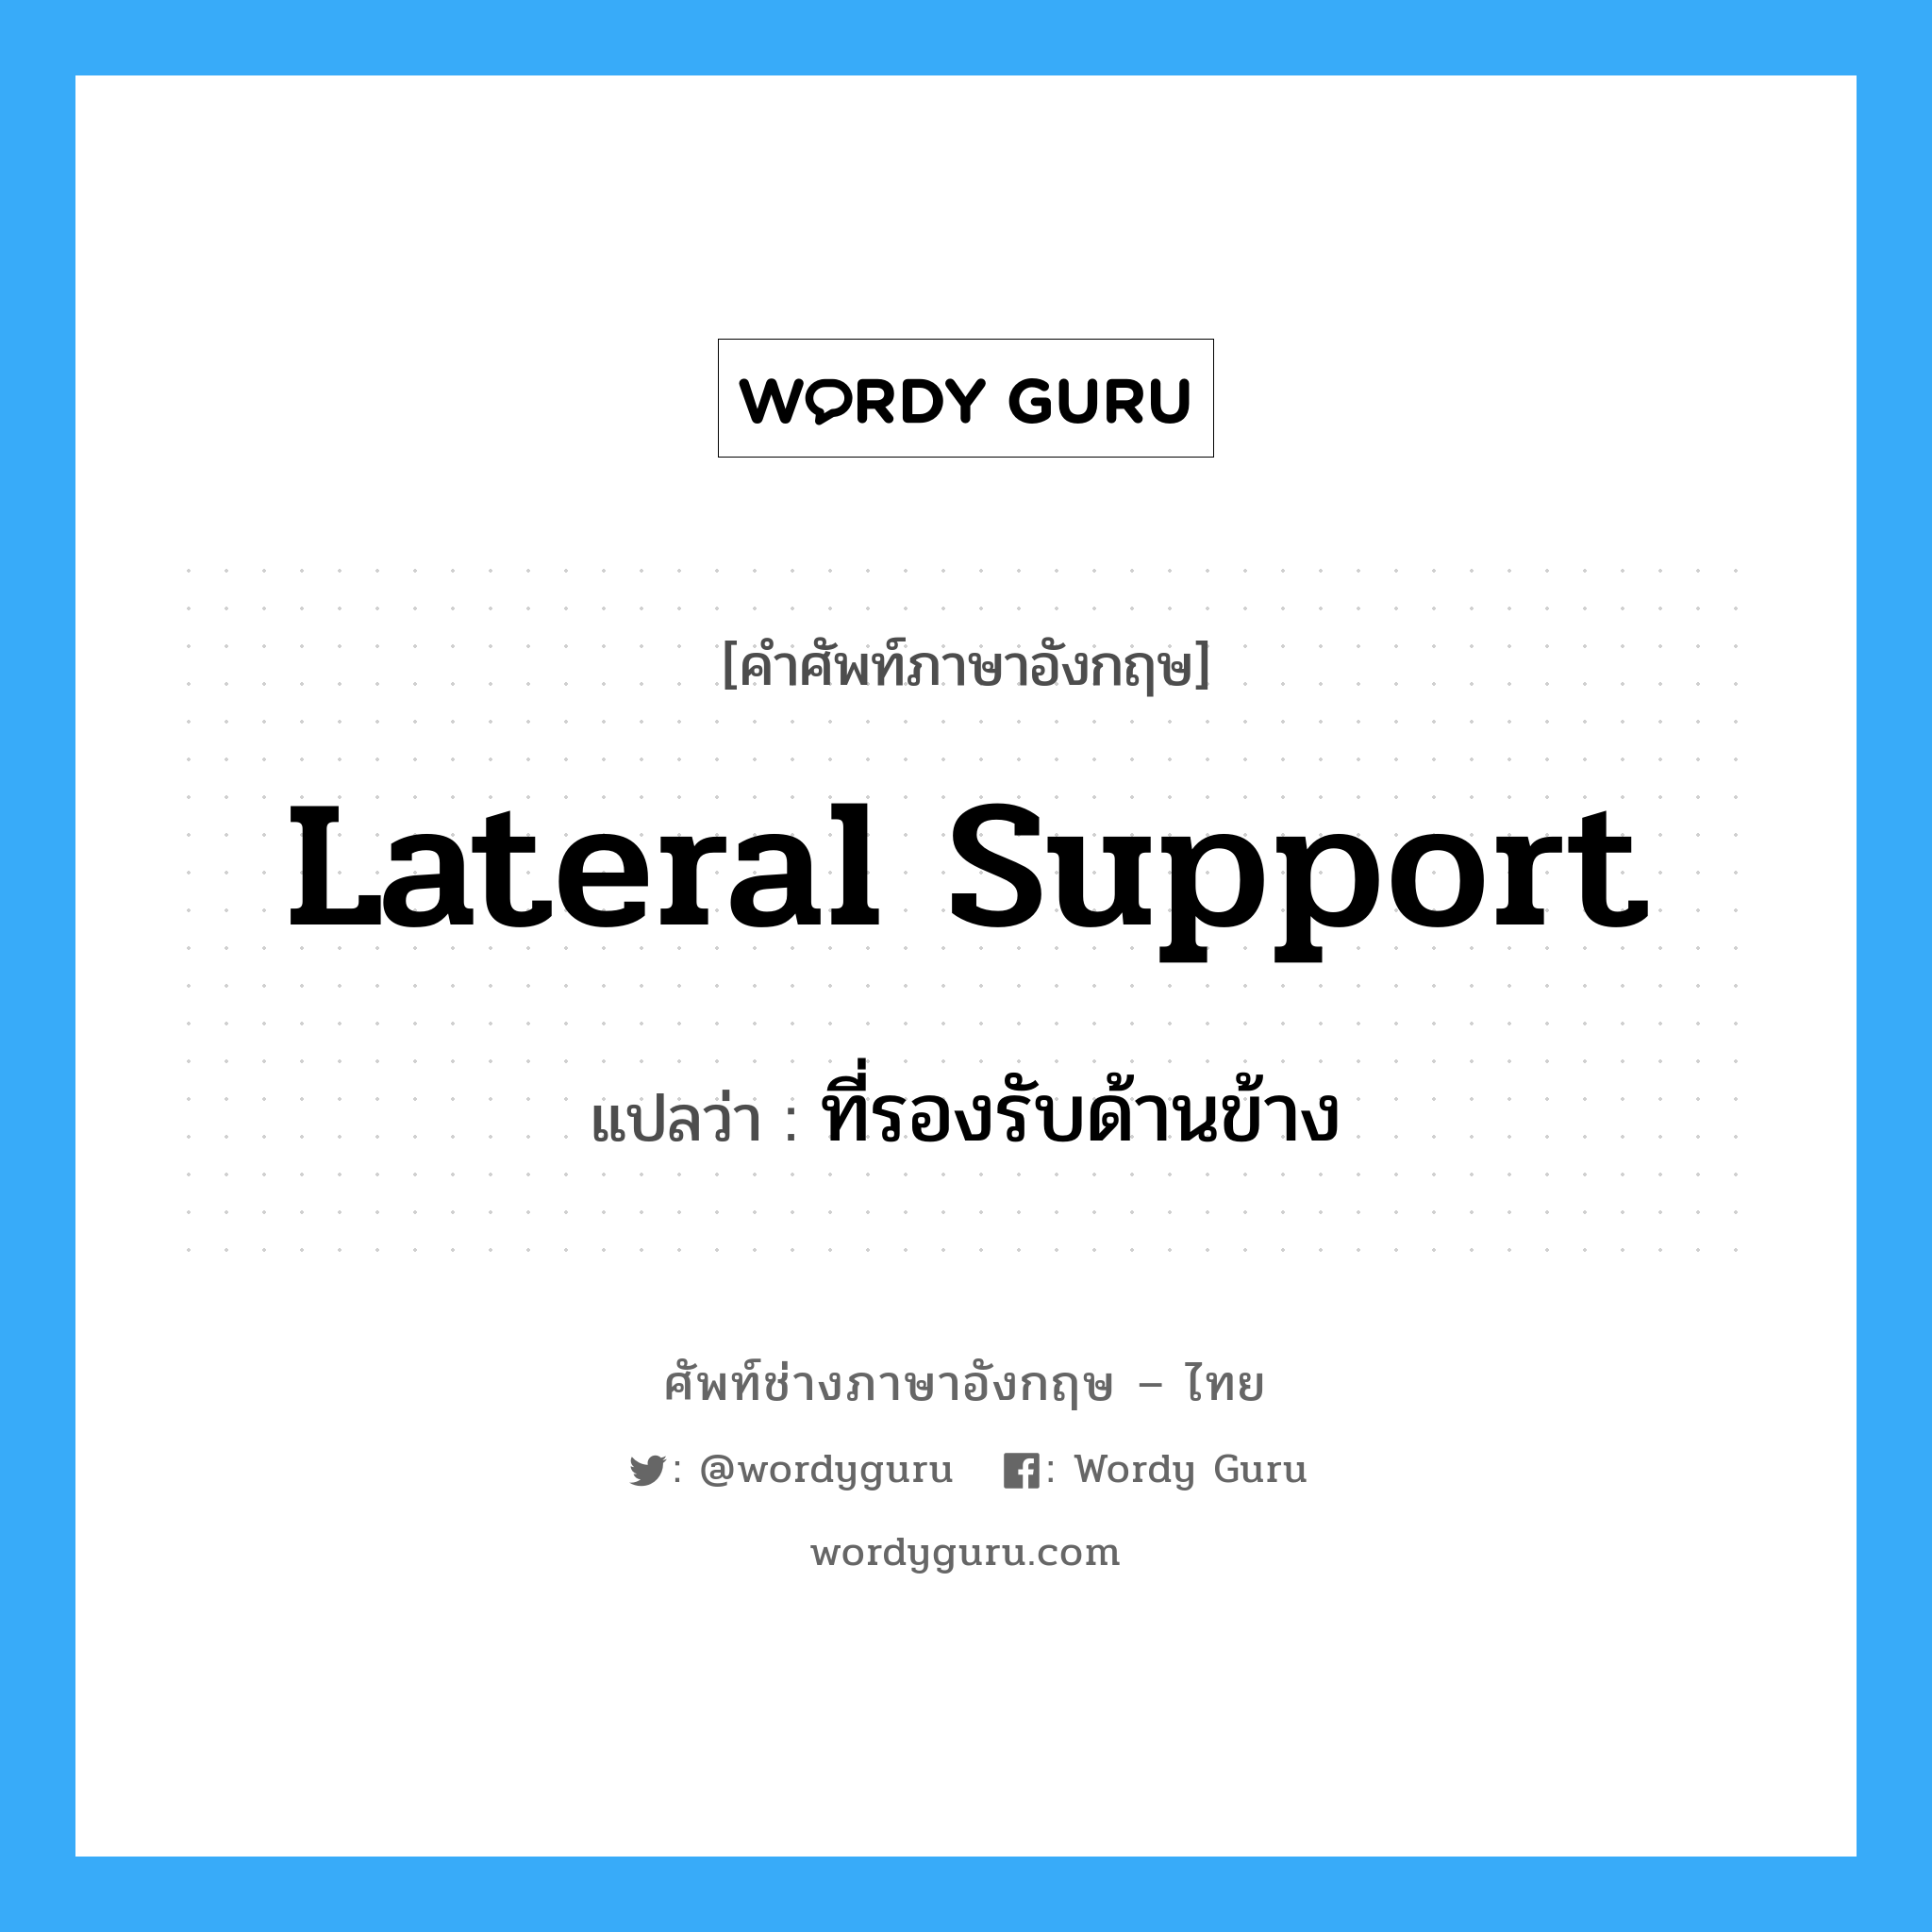 lateral support แปลว่า?, คำศัพท์ช่างภาษาอังกฤษ - ไทย lateral support คำศัพท์ภาษาอังกฤษ lateral support แปลว่า ที่รองรับด้านข้าง